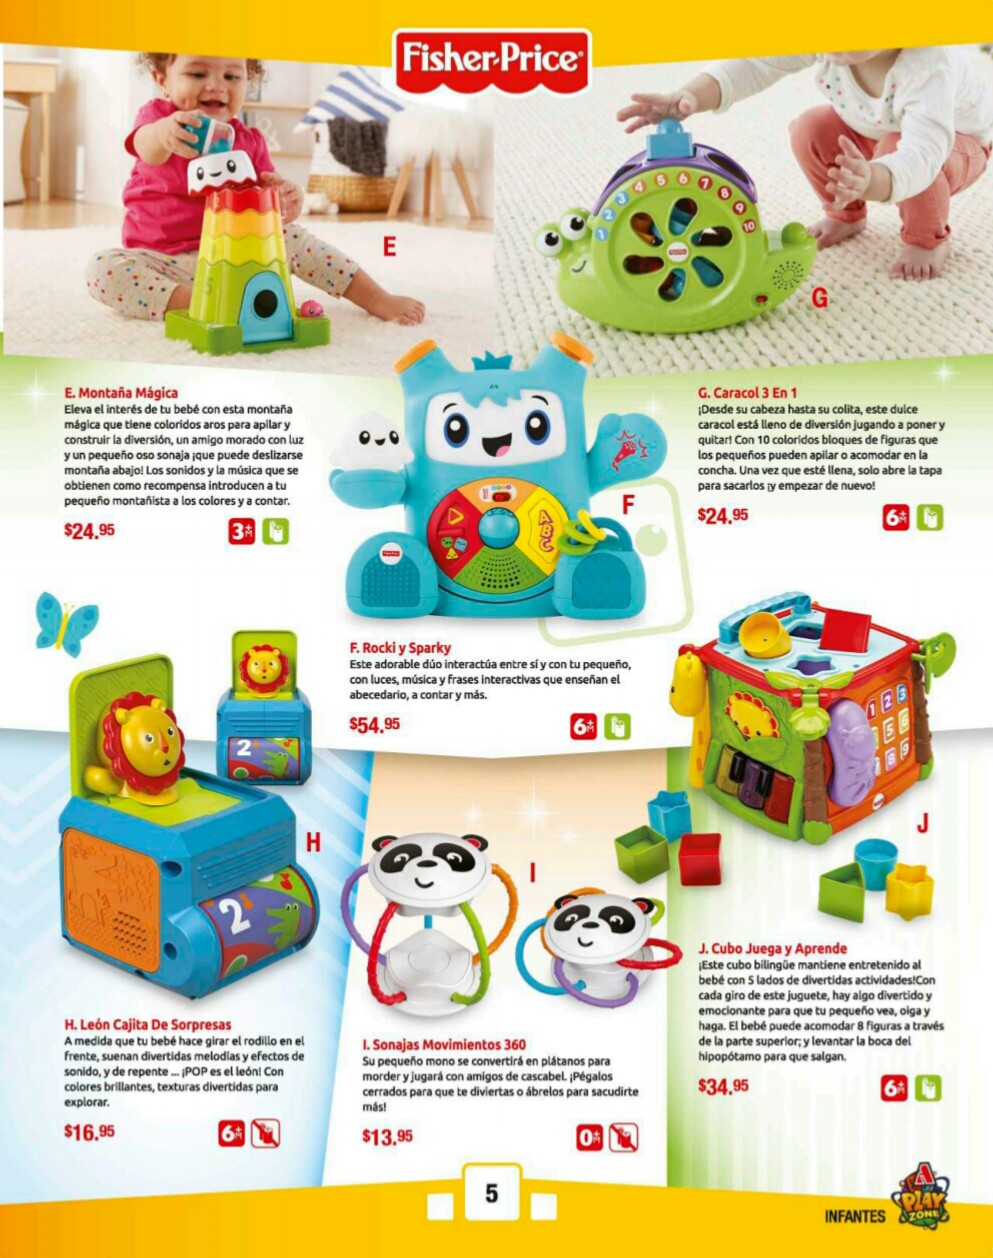 Catalogos juguetes farmacia Arrocha 2018 p5